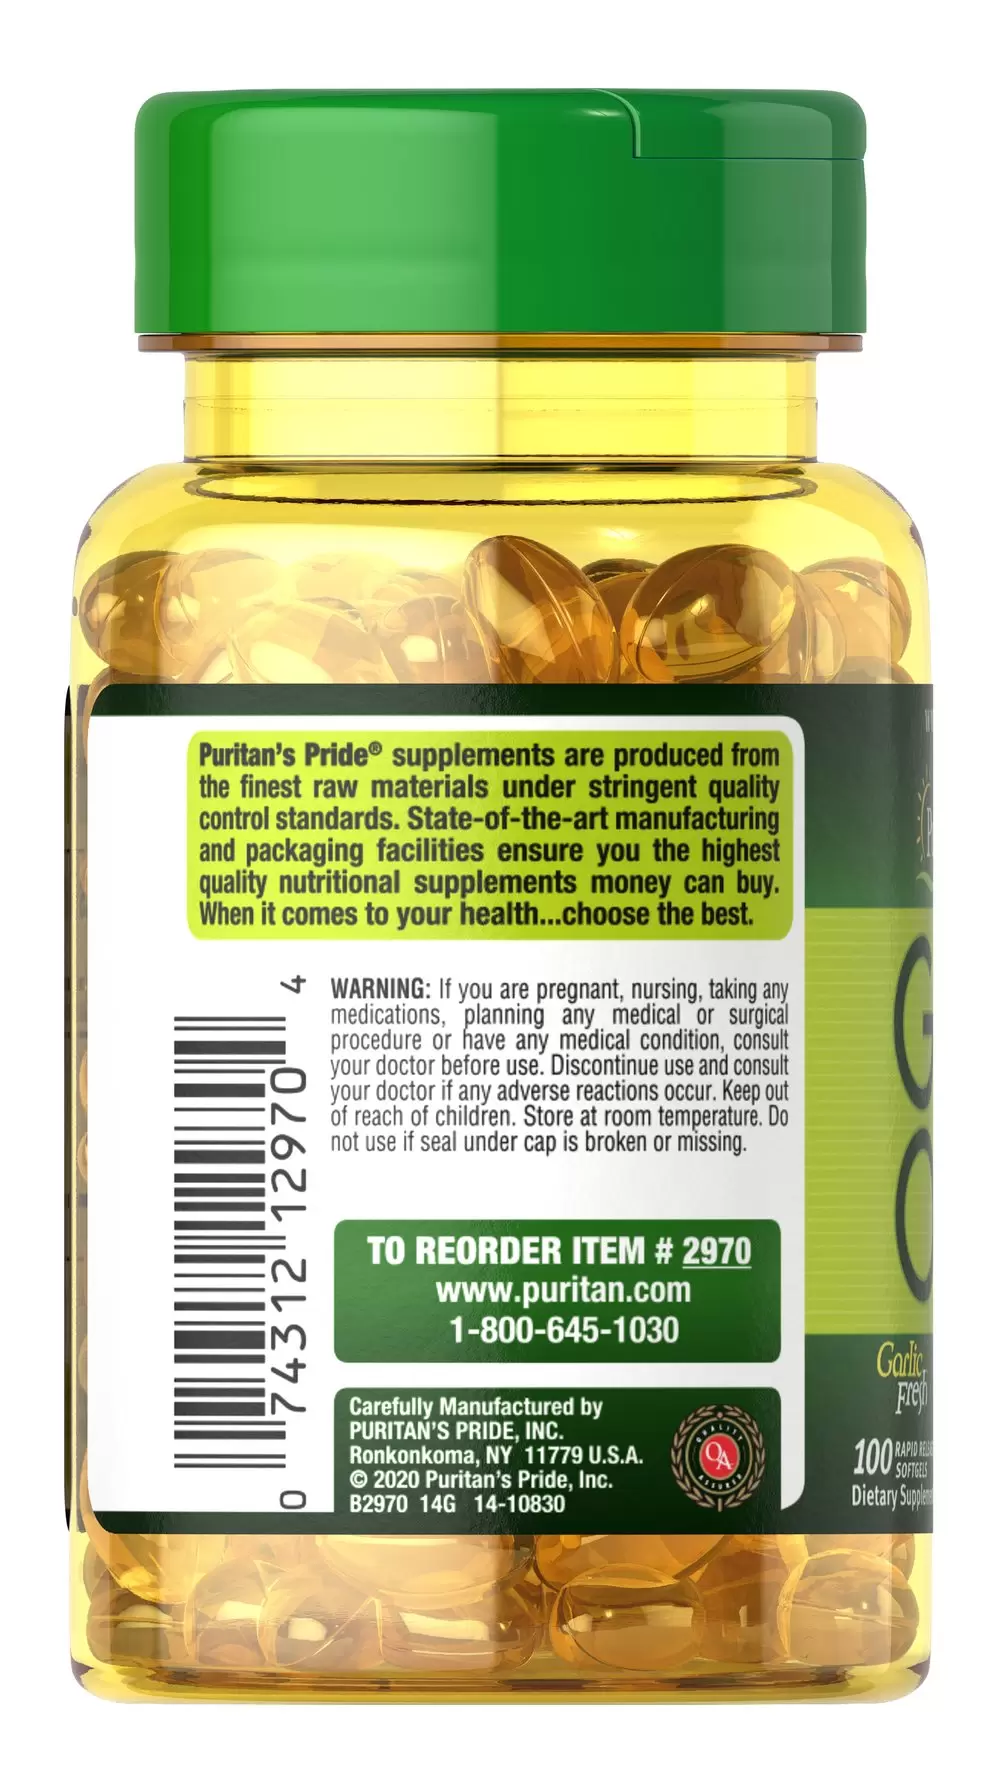 Tinh dầu tỏi Garlic Oil Puritan's Pride Mỹ giúp tăng sức đề kháng, giảm lượng cholesterol, phòng xơ vữa mạch, cao huyết áp - OZ Slim Store-100viên/lọ